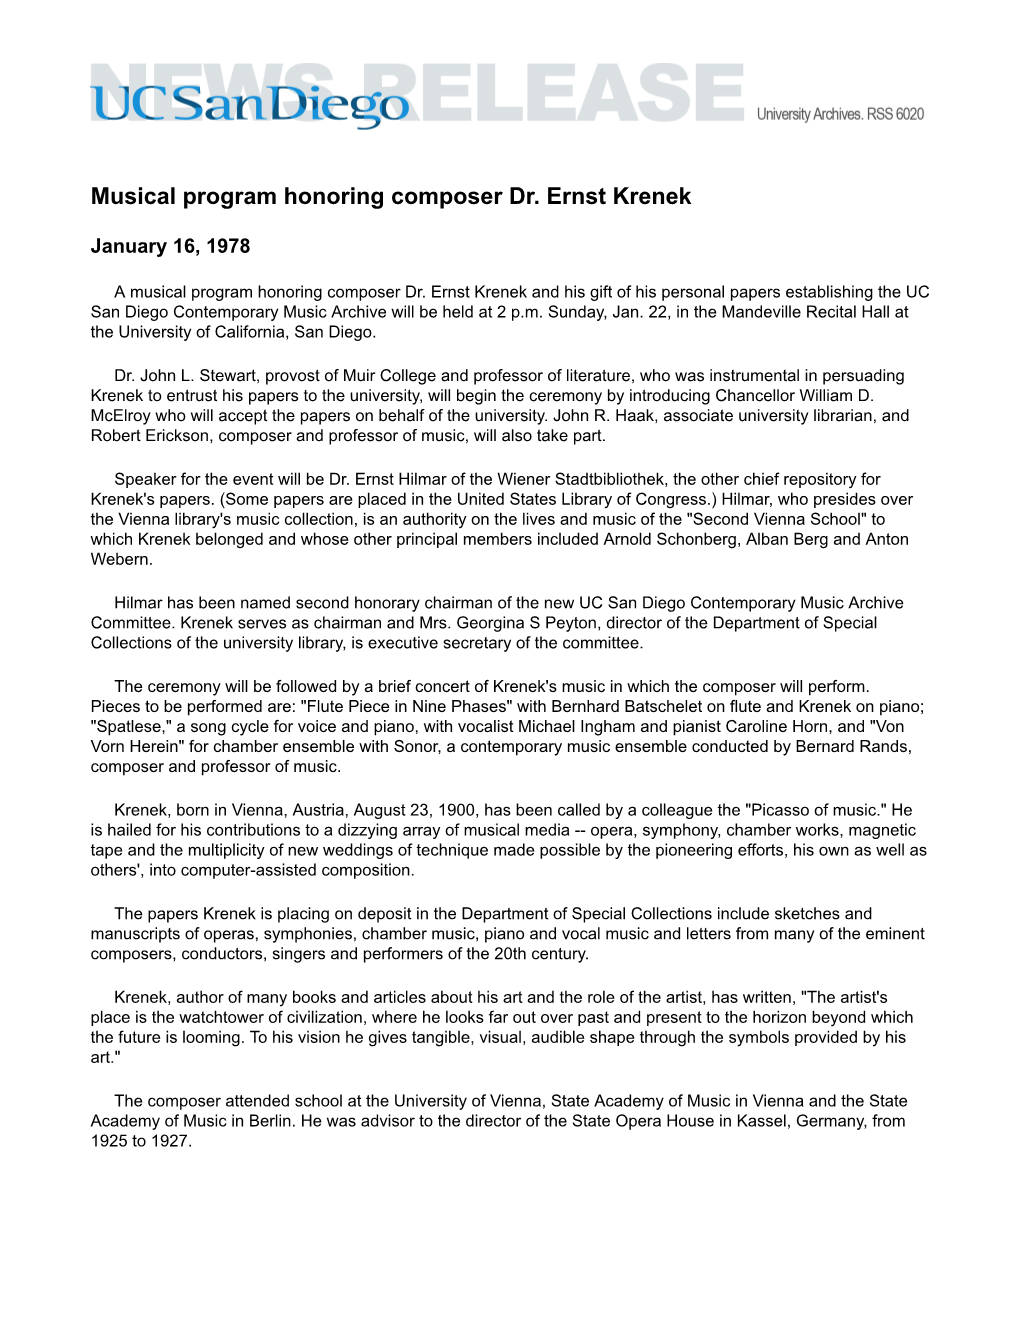 Musical Program Honoring Composer Dr. Ernst Krenek